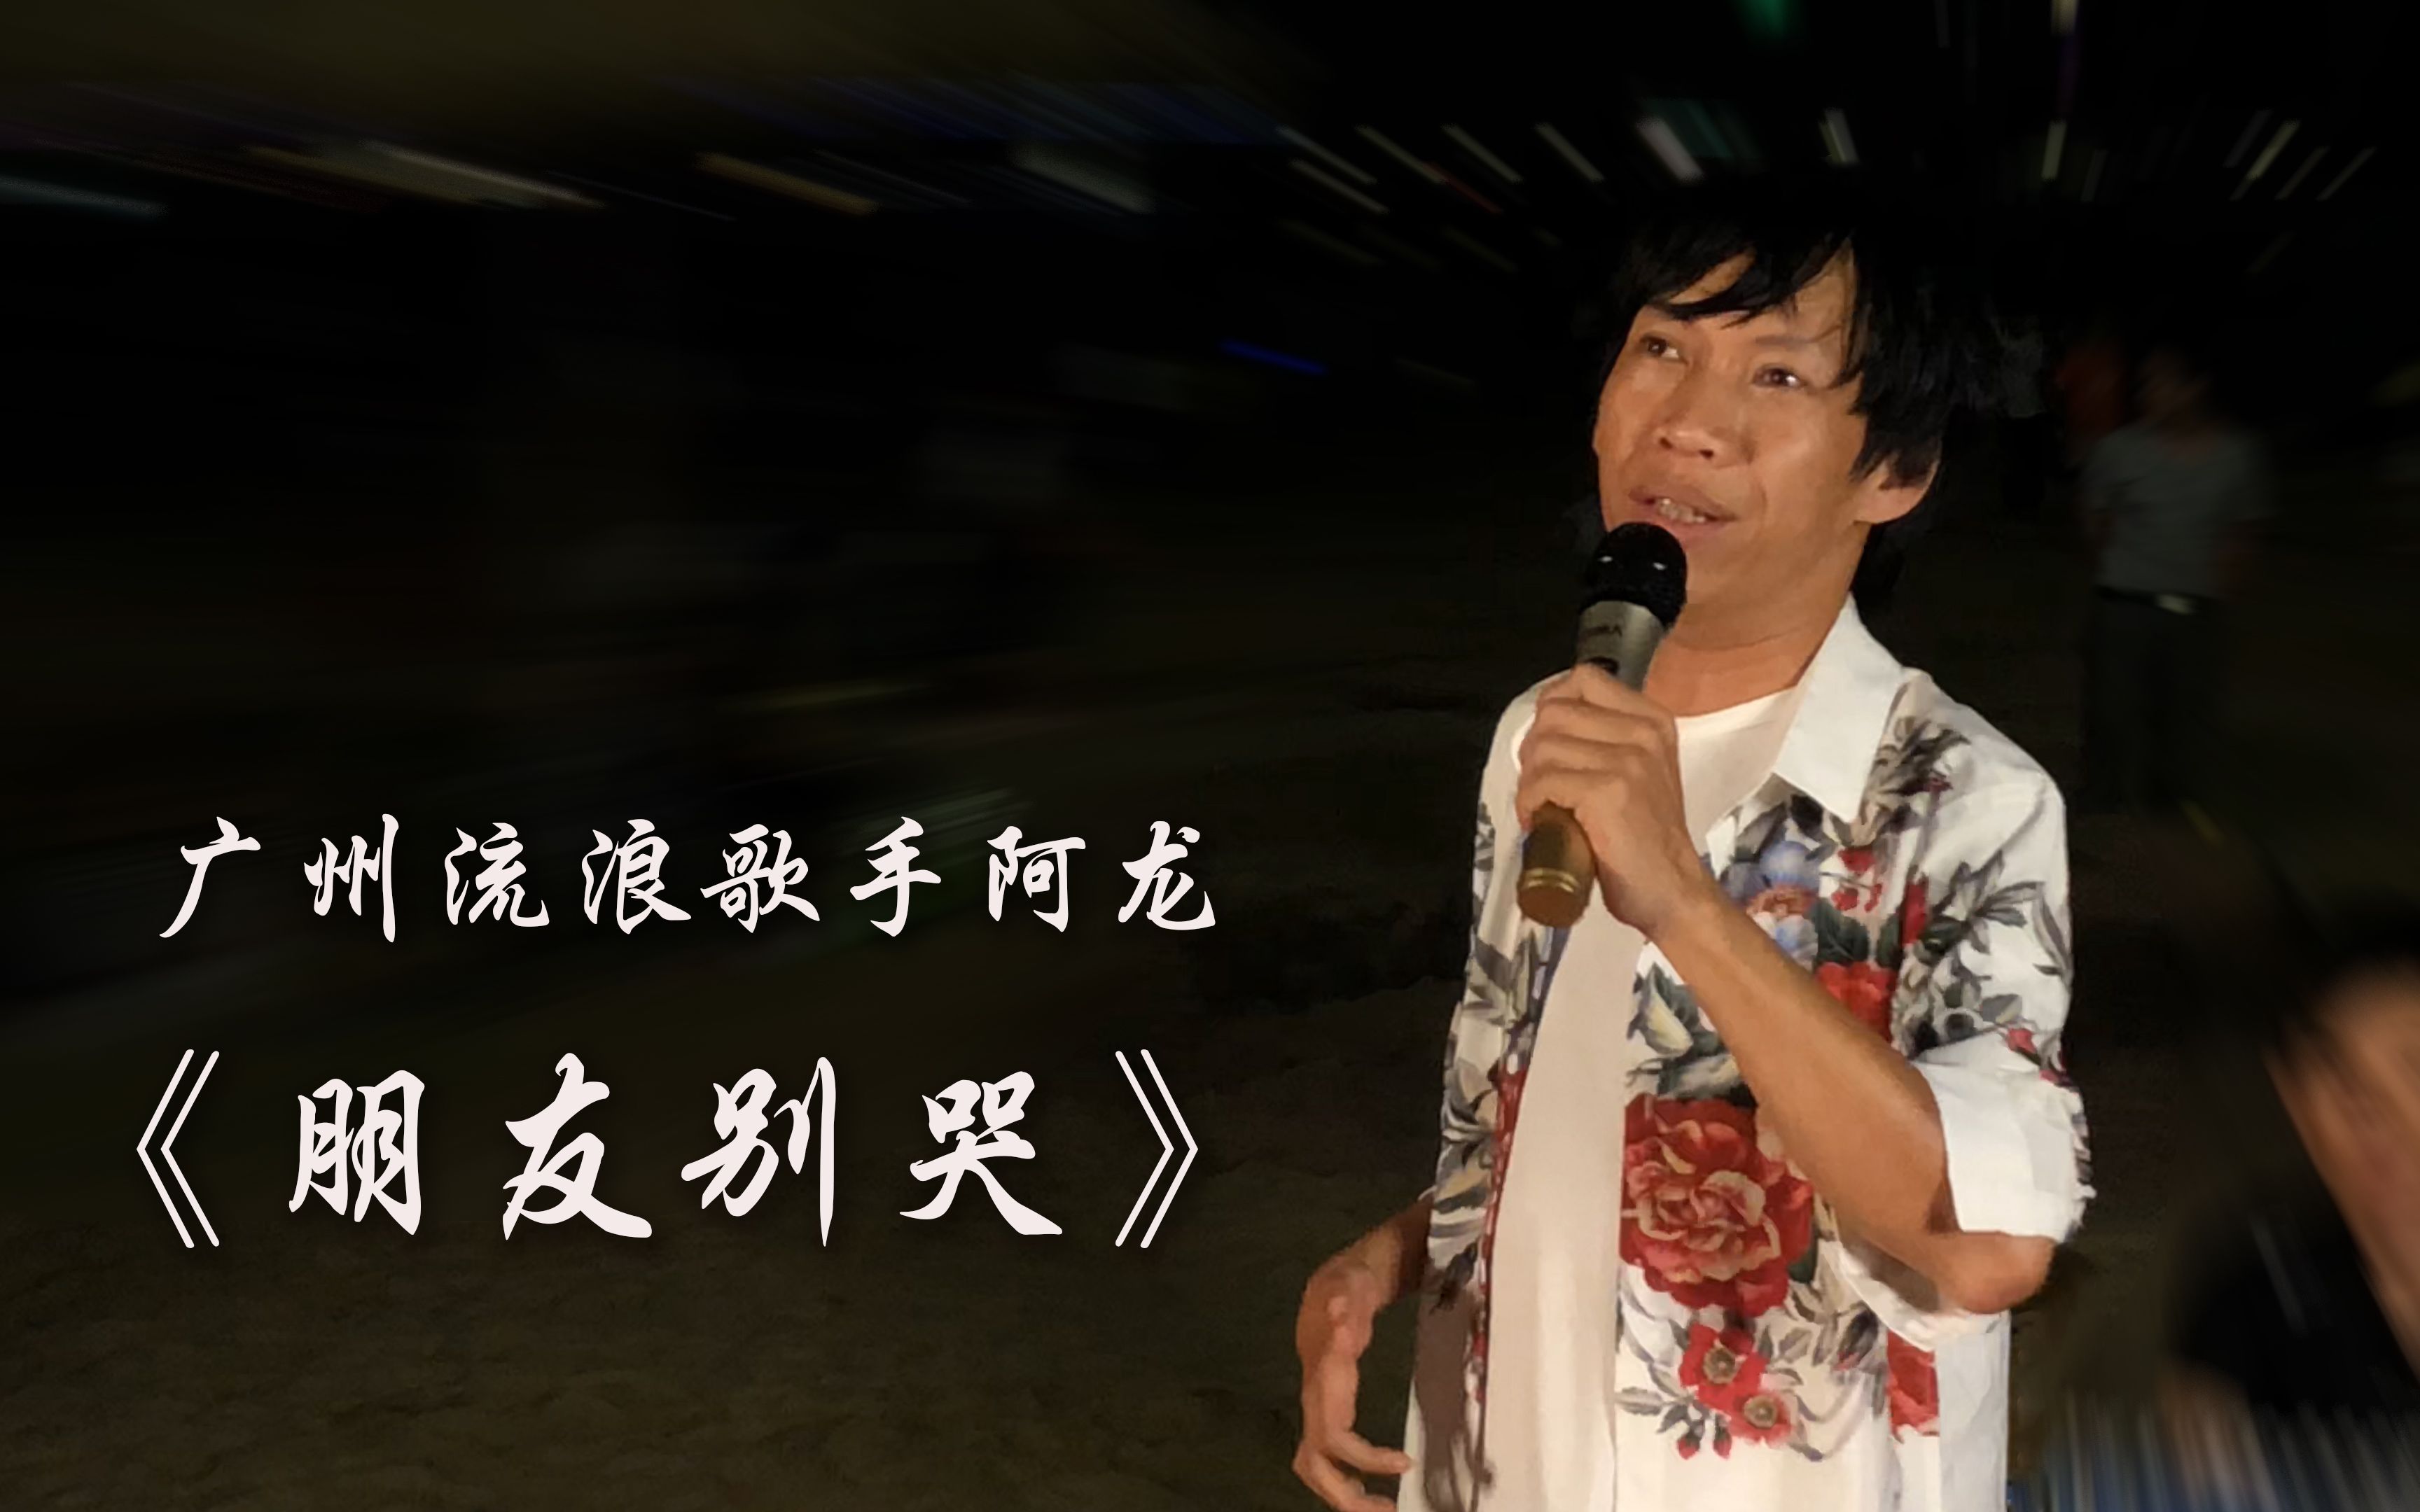 广州流浪歌手阿龙在湛江演唱《朋友别哭》,深情感动全场观众